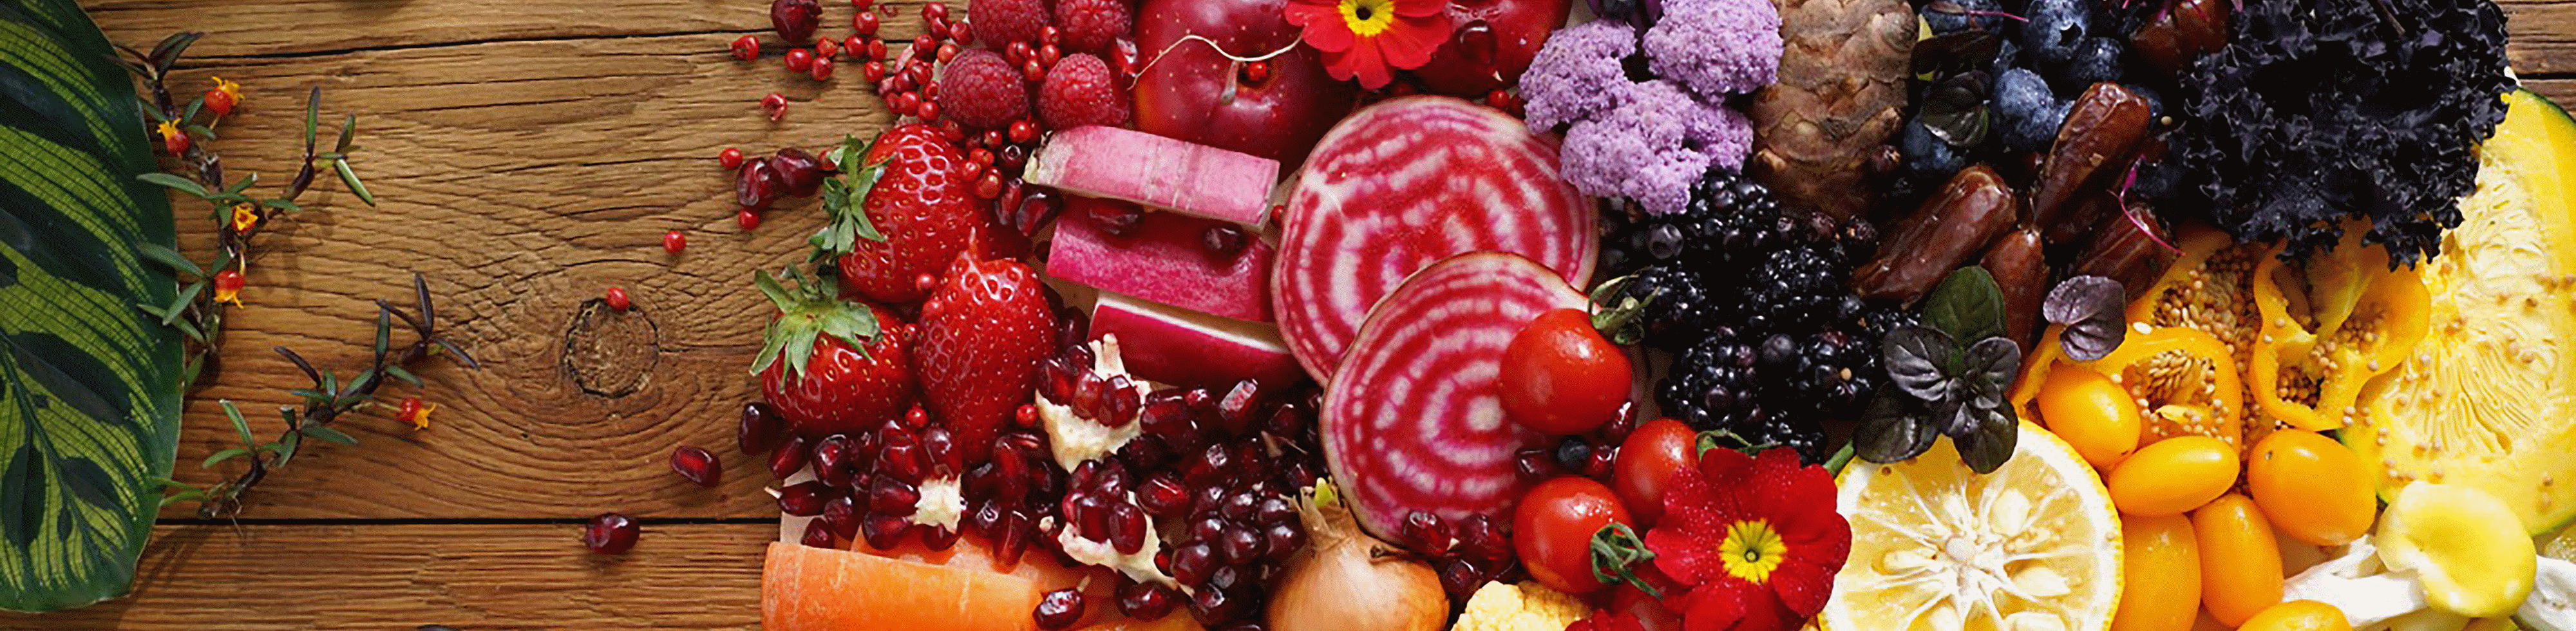 Fotografie barevného ovoce a zeleniny s vysokým rozlišením napříč záběrem pořízená tímto objektivem